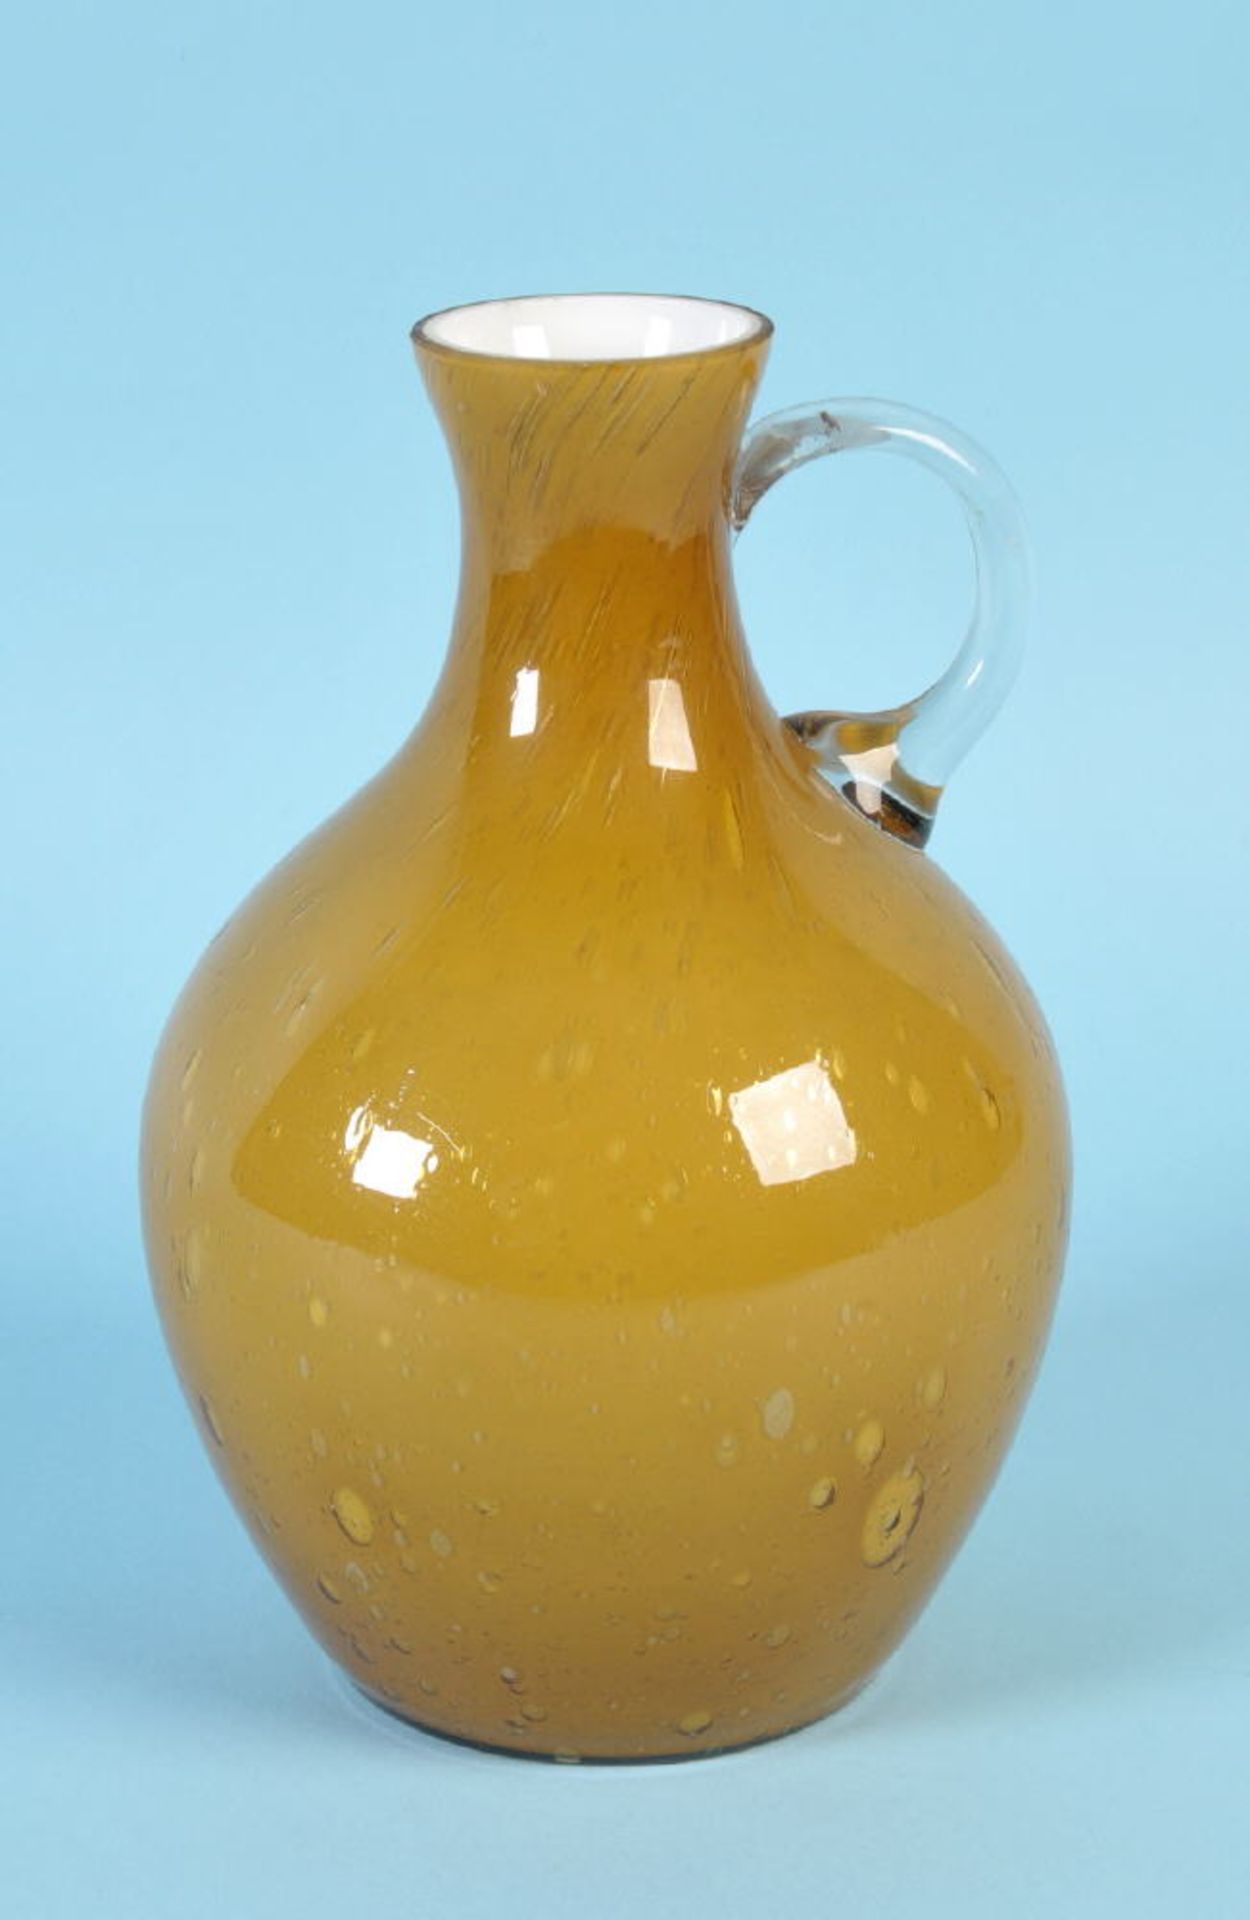 Henkelvasefarbloses Glas, innen weißer Überfang, honigfarben unterfangen, eingeschlossenes